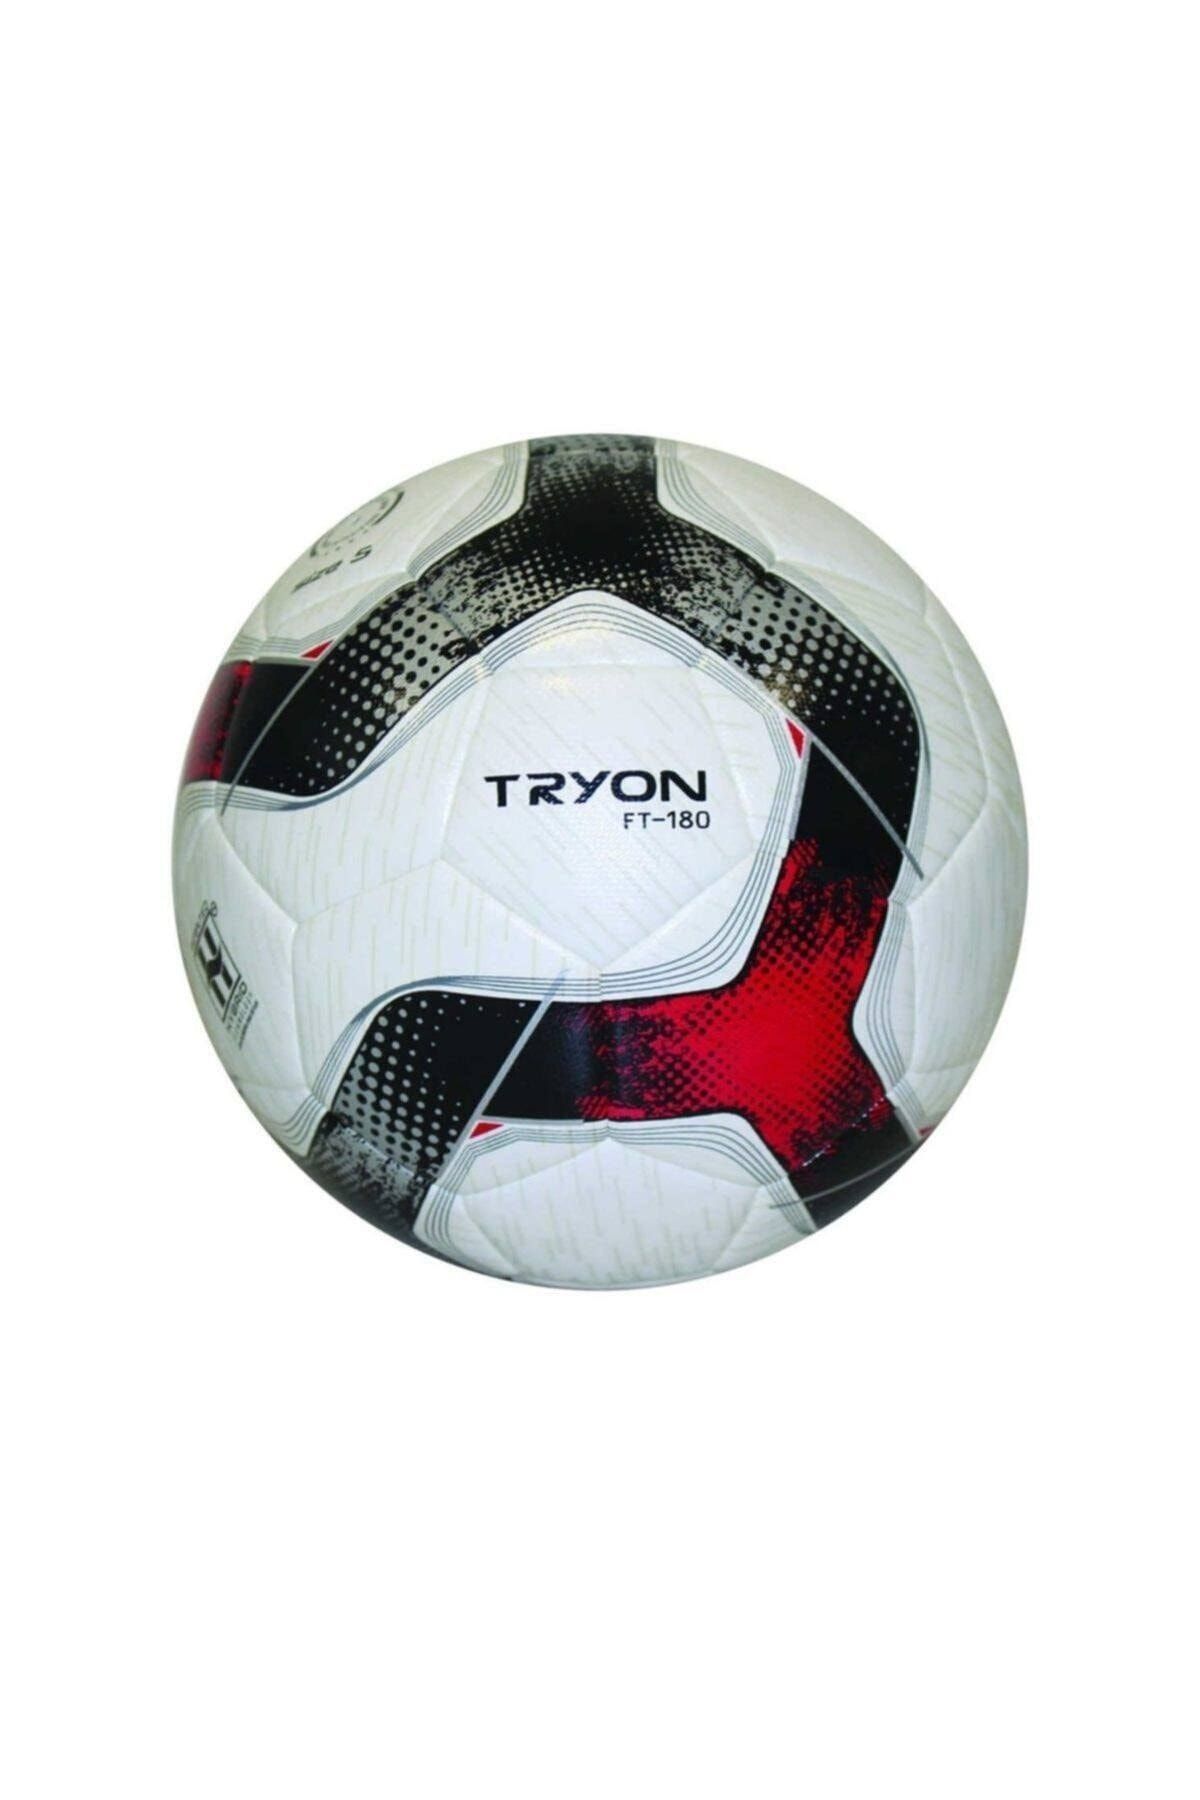 TRYON Ft-180 Futbol Topu